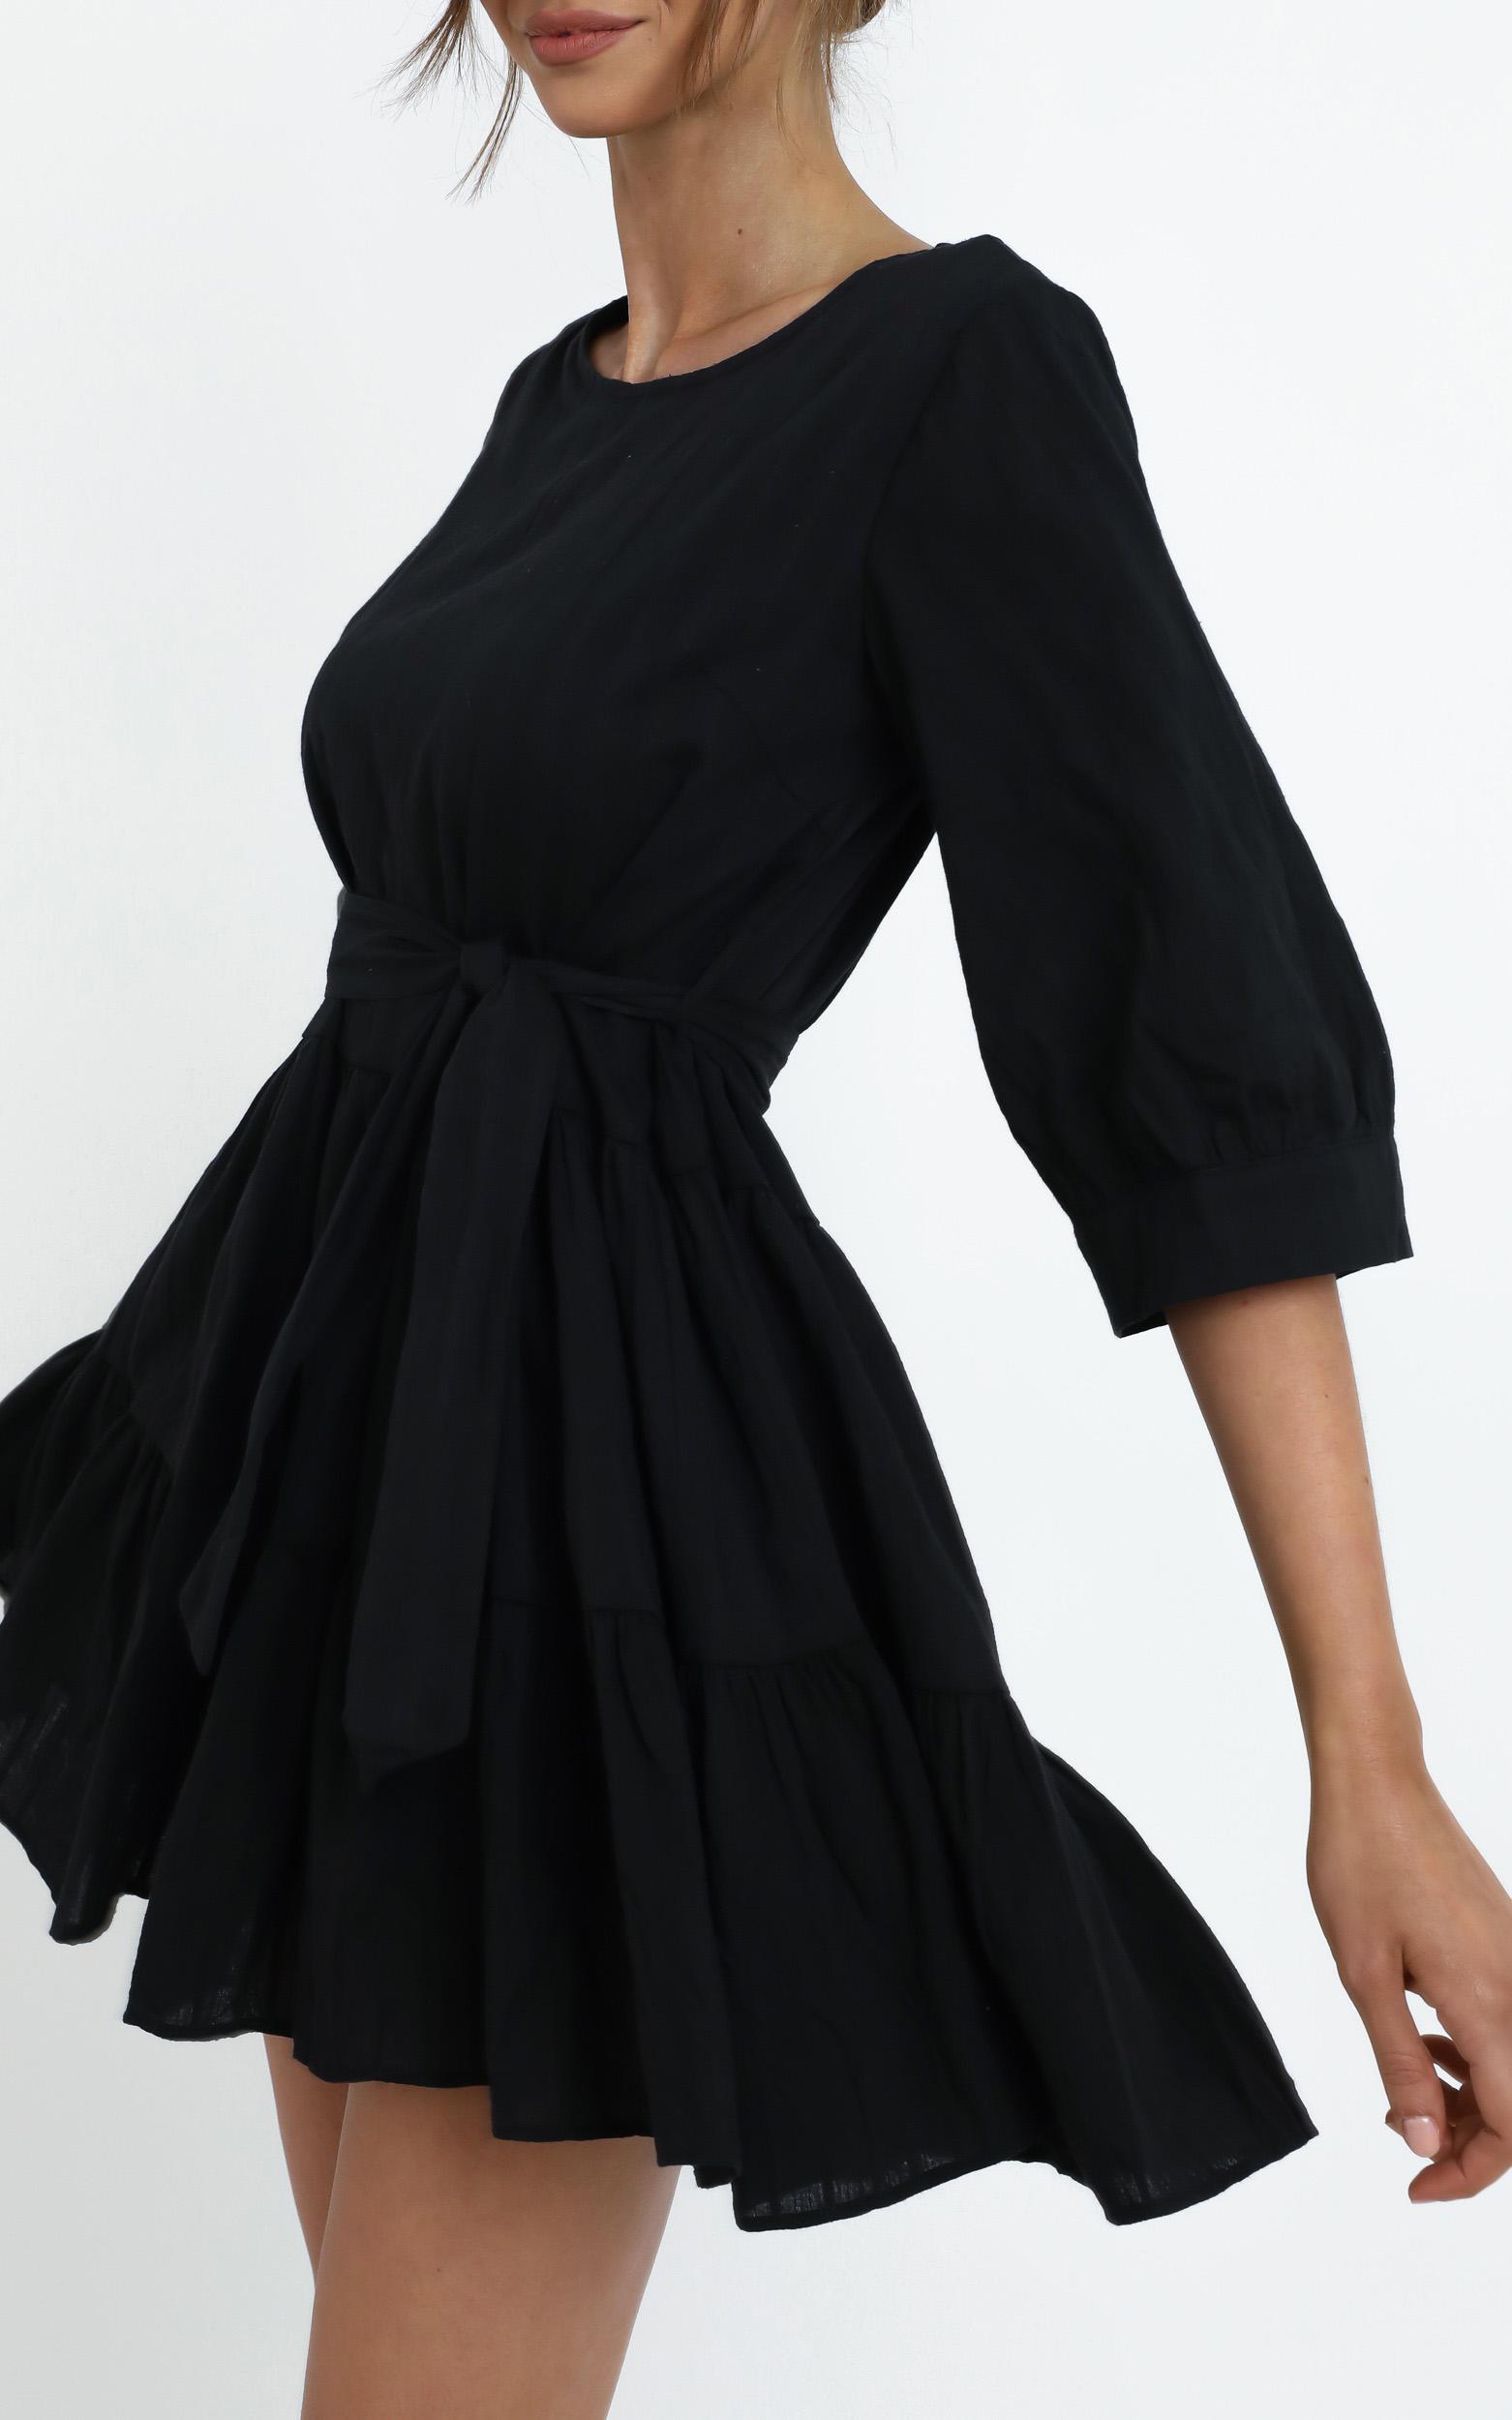 Cade Dress in Black - 14 (XL), Black, hi-res image number null